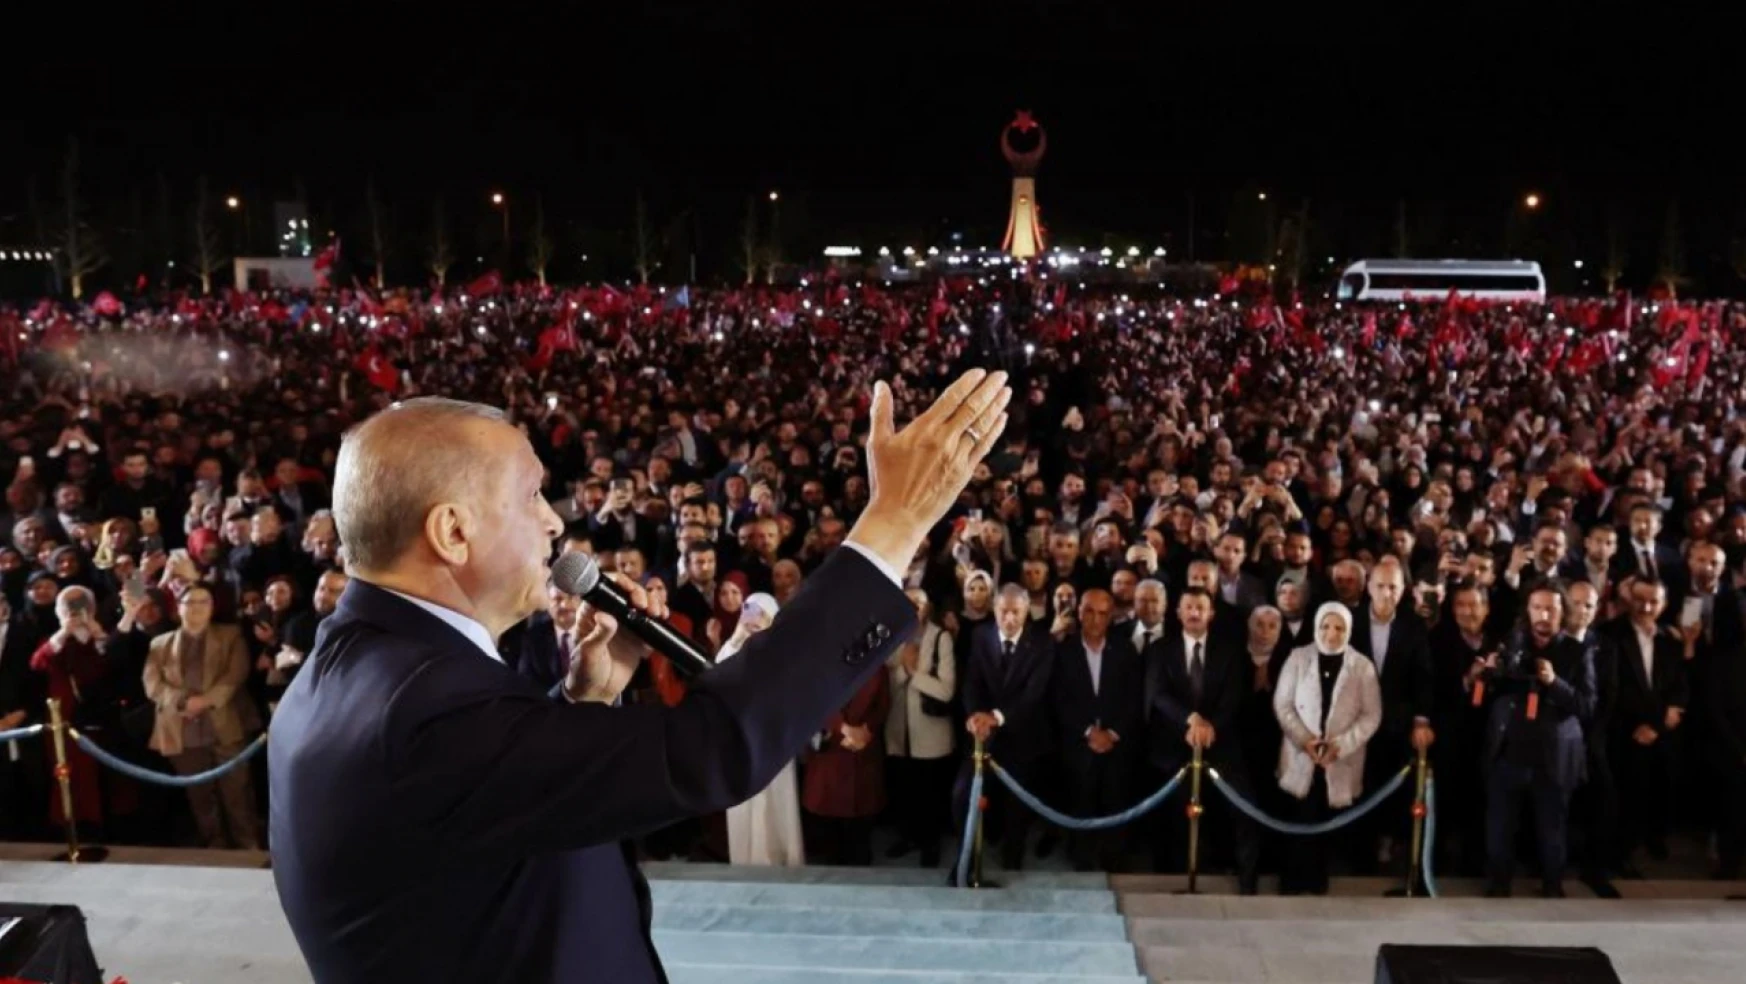 Cumhurbaşkanı Erdoğan 'Hizmet vermeye hasredeceğiz'